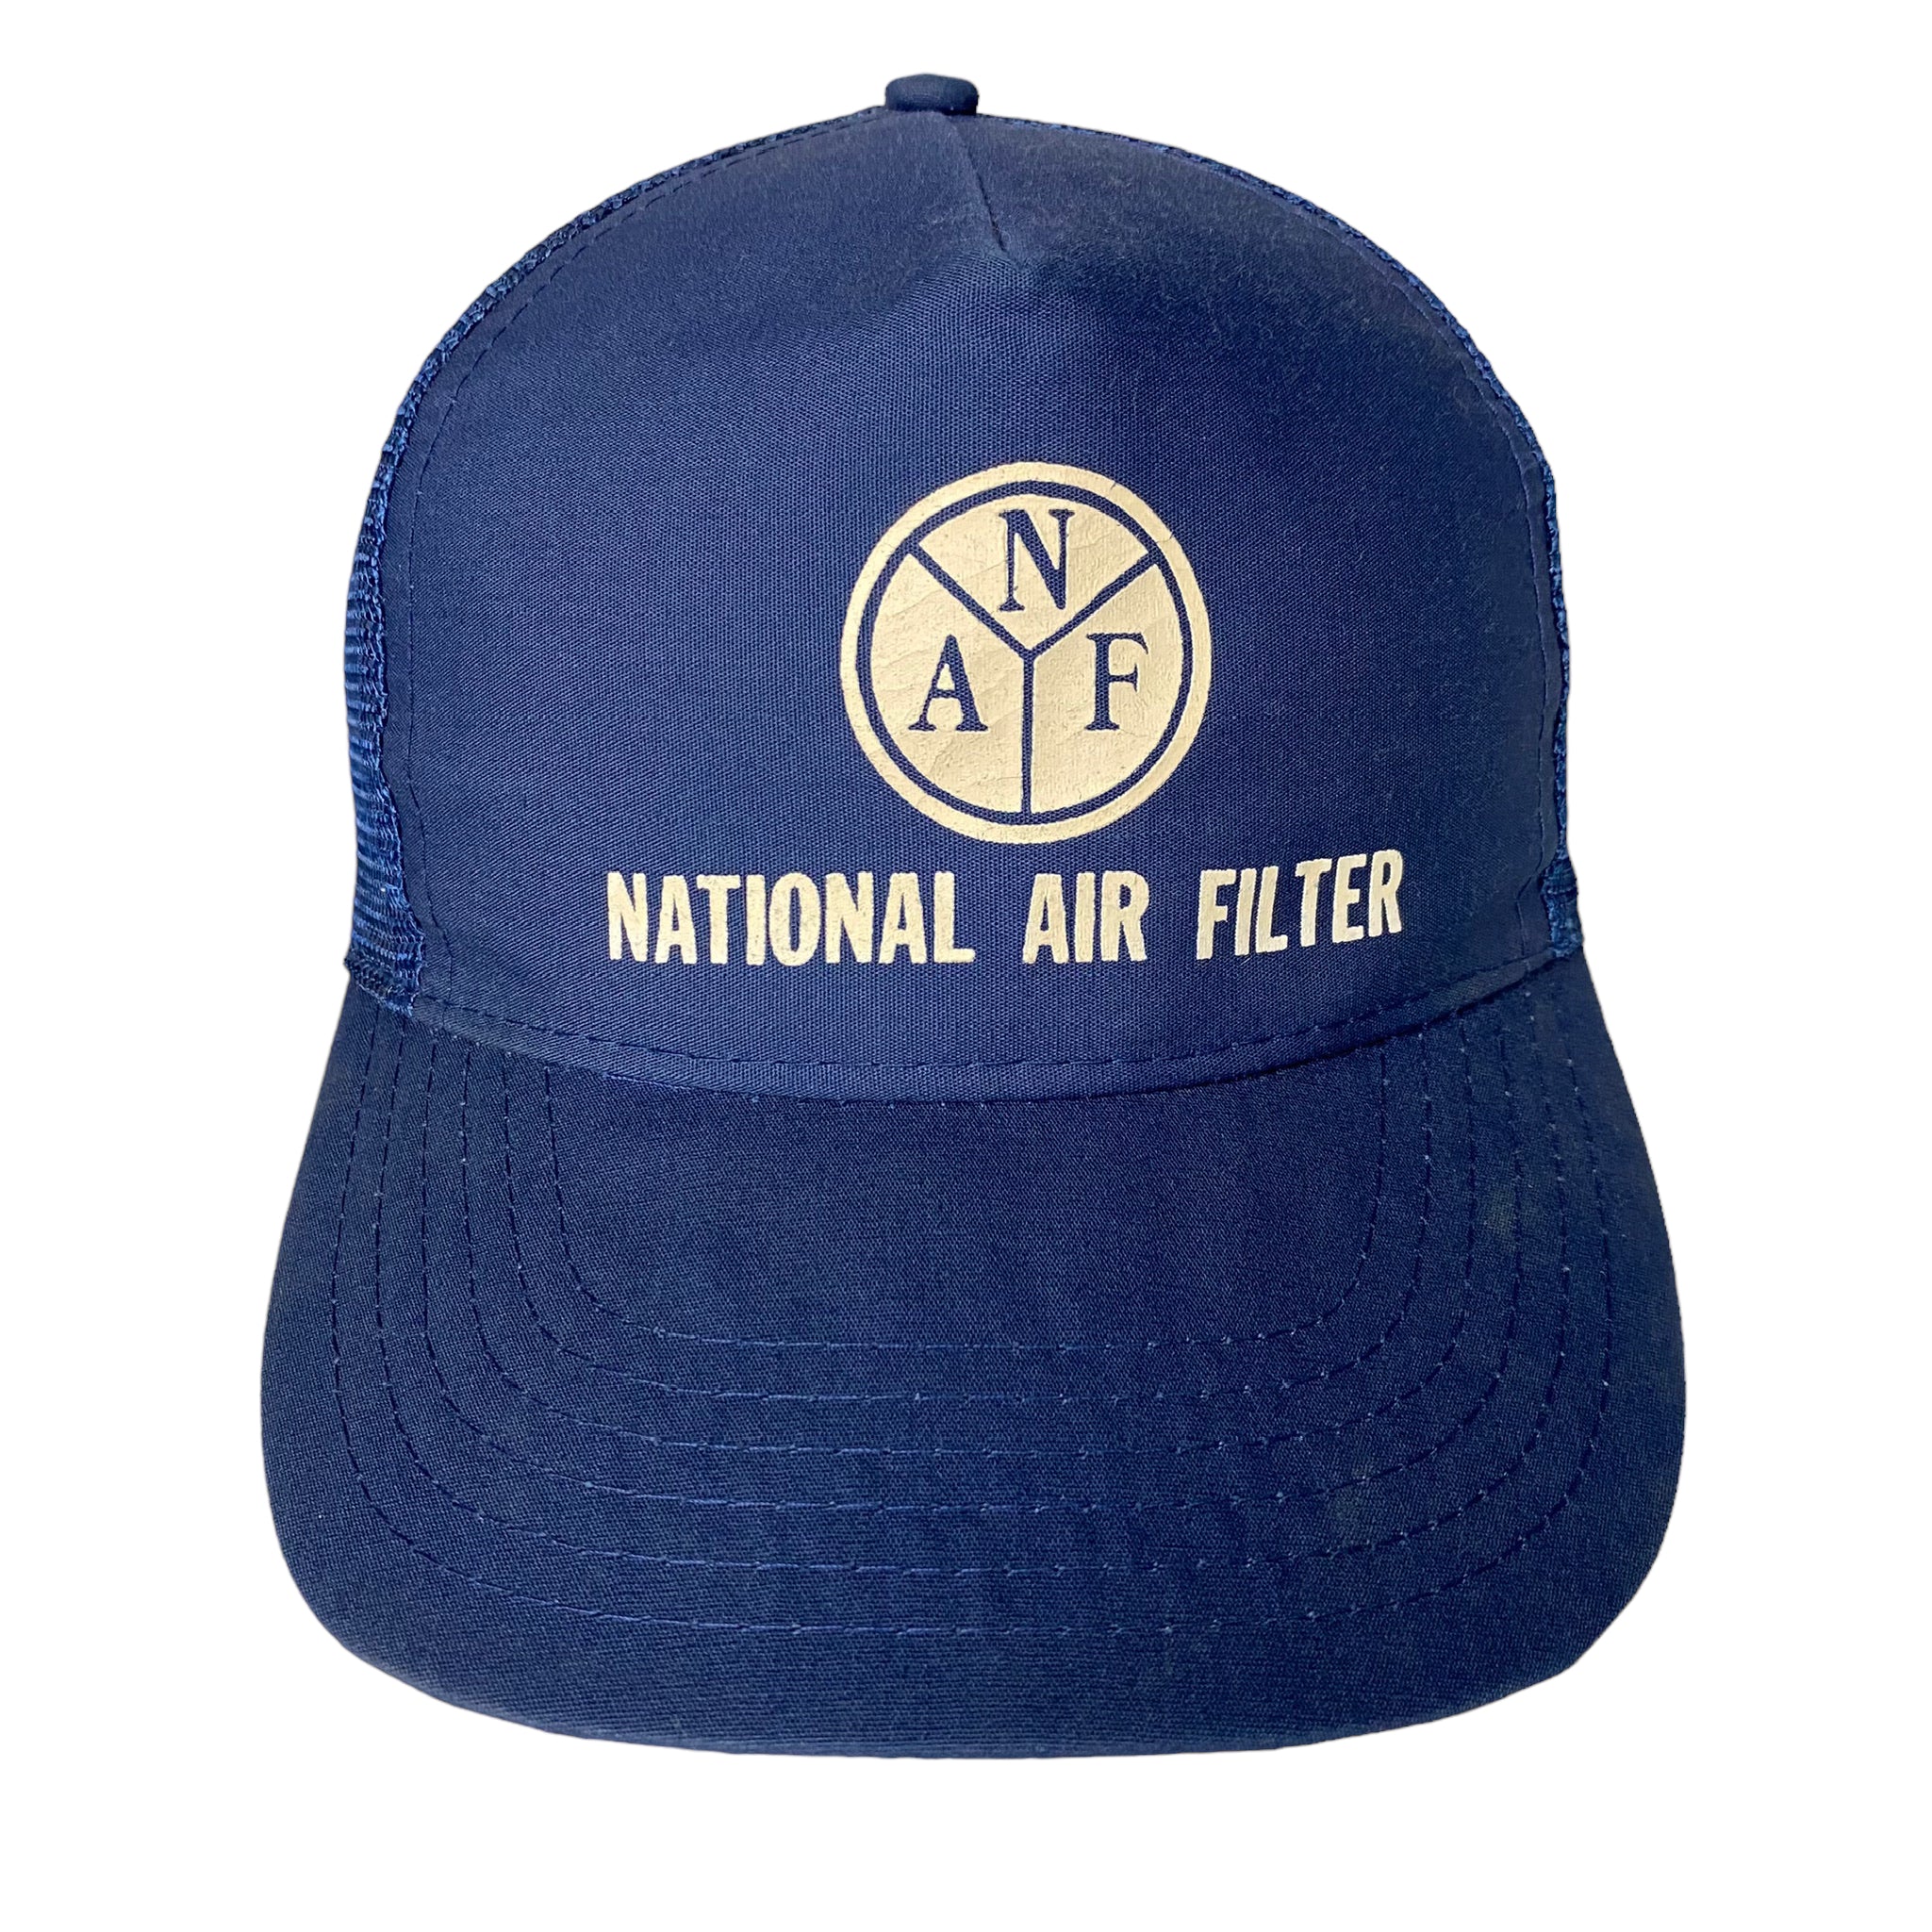 Vintage National Air Filter SnapBack